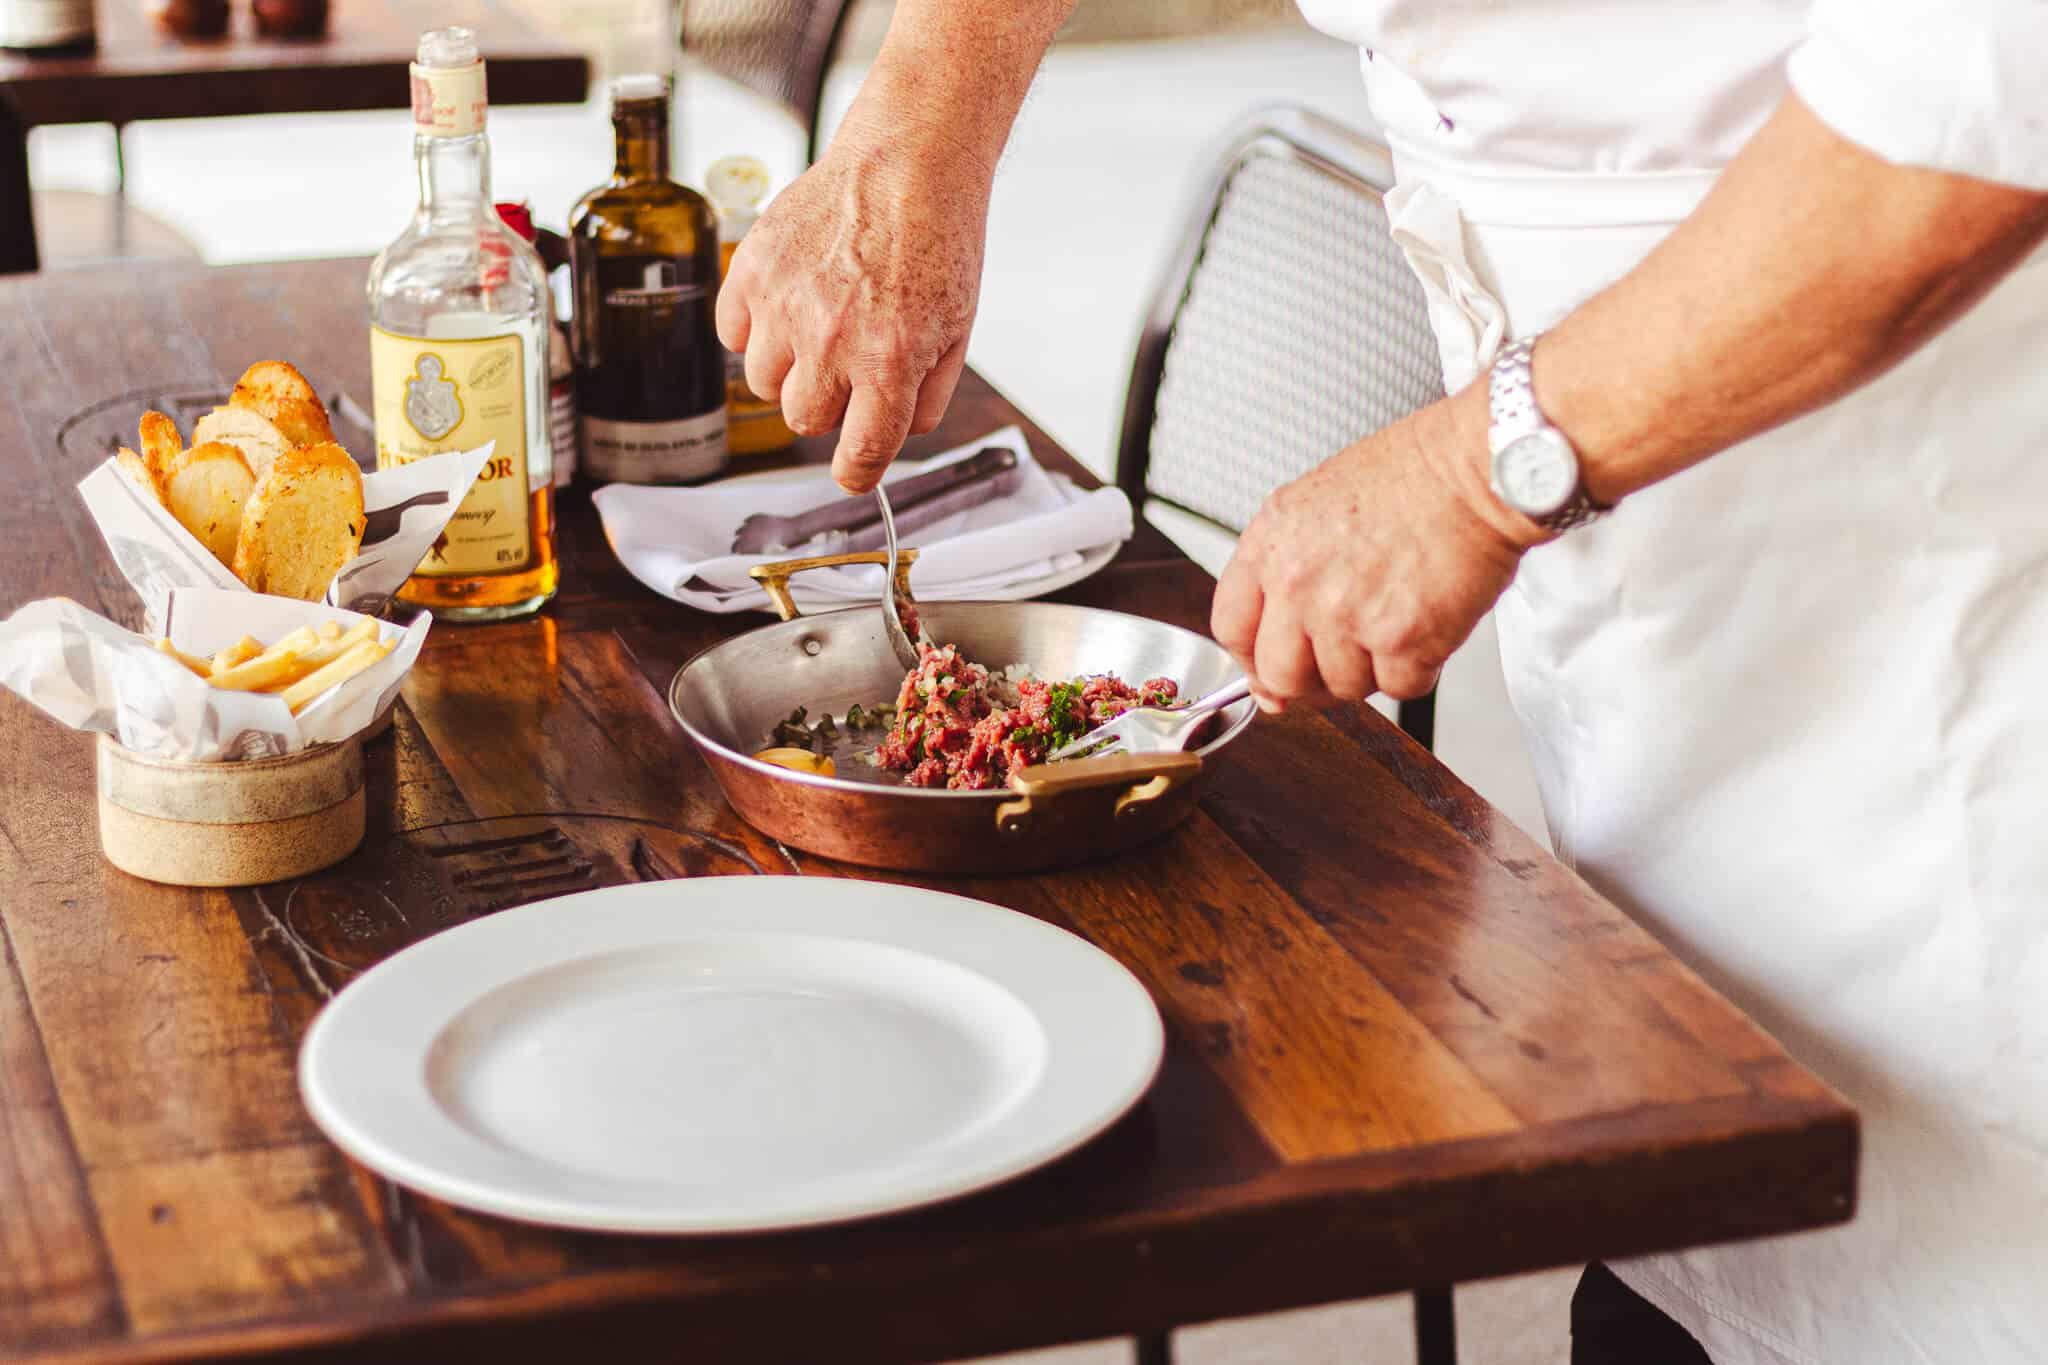 foto mostra o processo de preparação do steak tartare direto na mesa, o chef está com as mãos na panela fazendo a mistura dos ingredientes